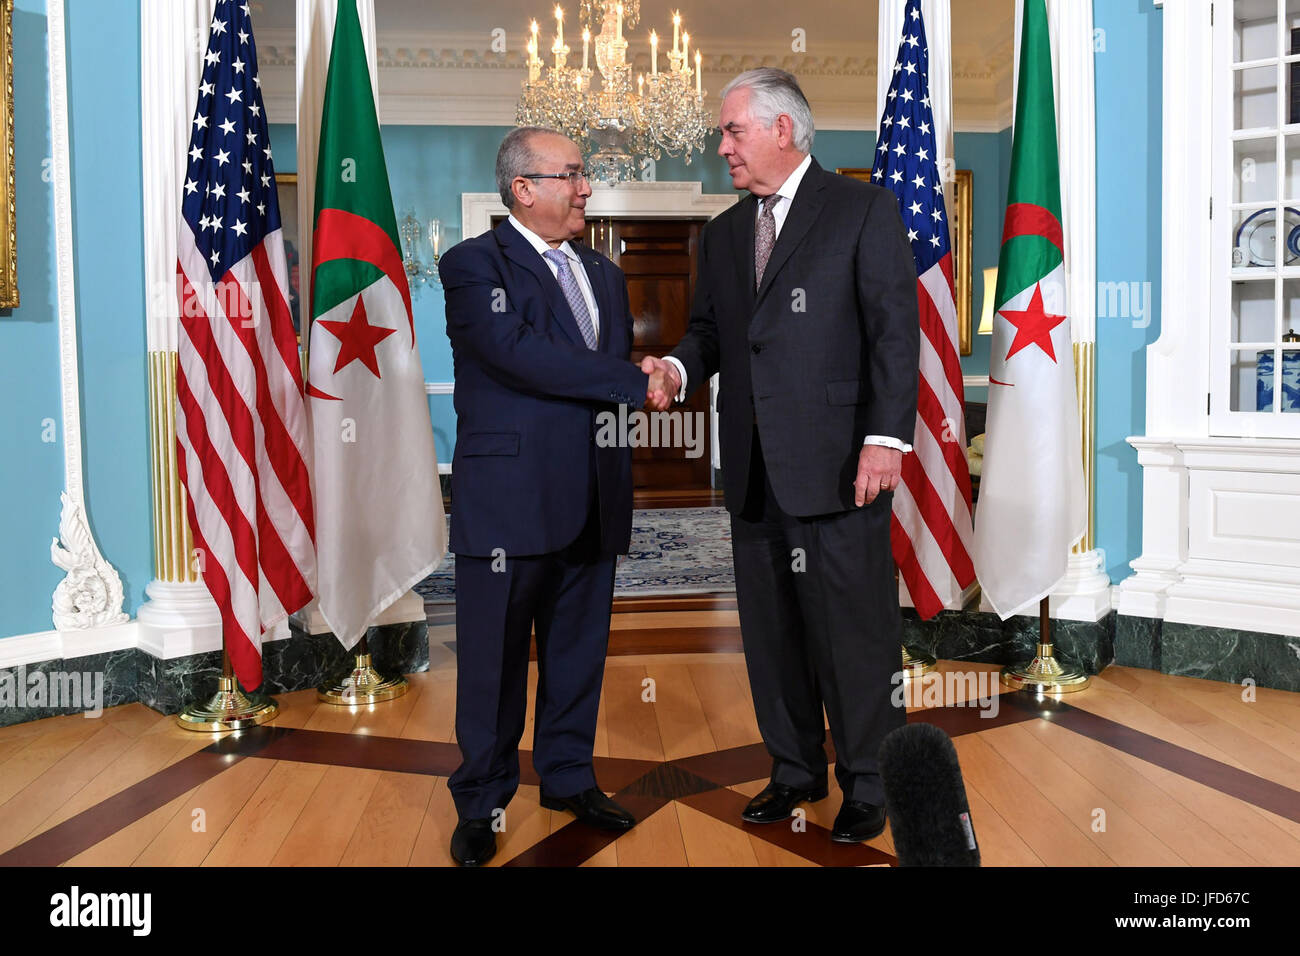 La secrétaire d'État des États-Unis, Rex Tillerson parle avec le Ministre algérien des Affaires étrangères Ramtane Lamamra avant leur réunion bilatérale au département d'État des États-Unis à Washington, D.C., le 17 mai 2017. Banque D'Images